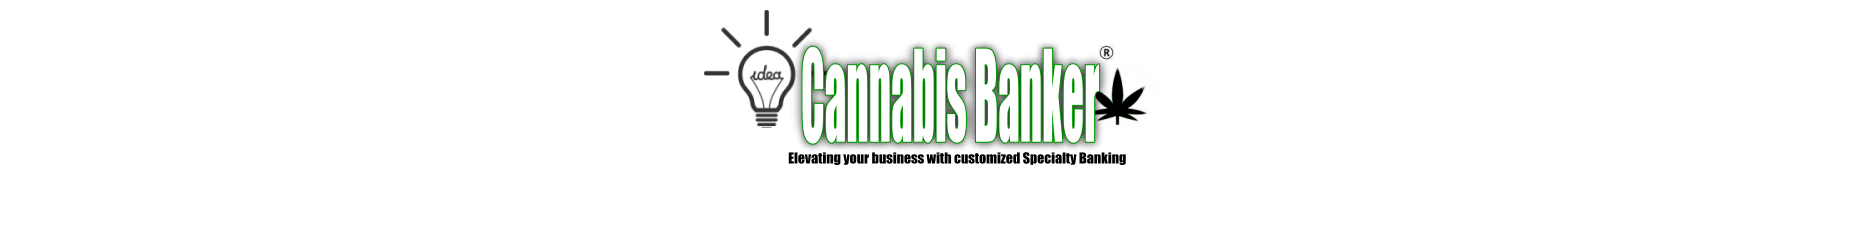 CannabisBanker banner